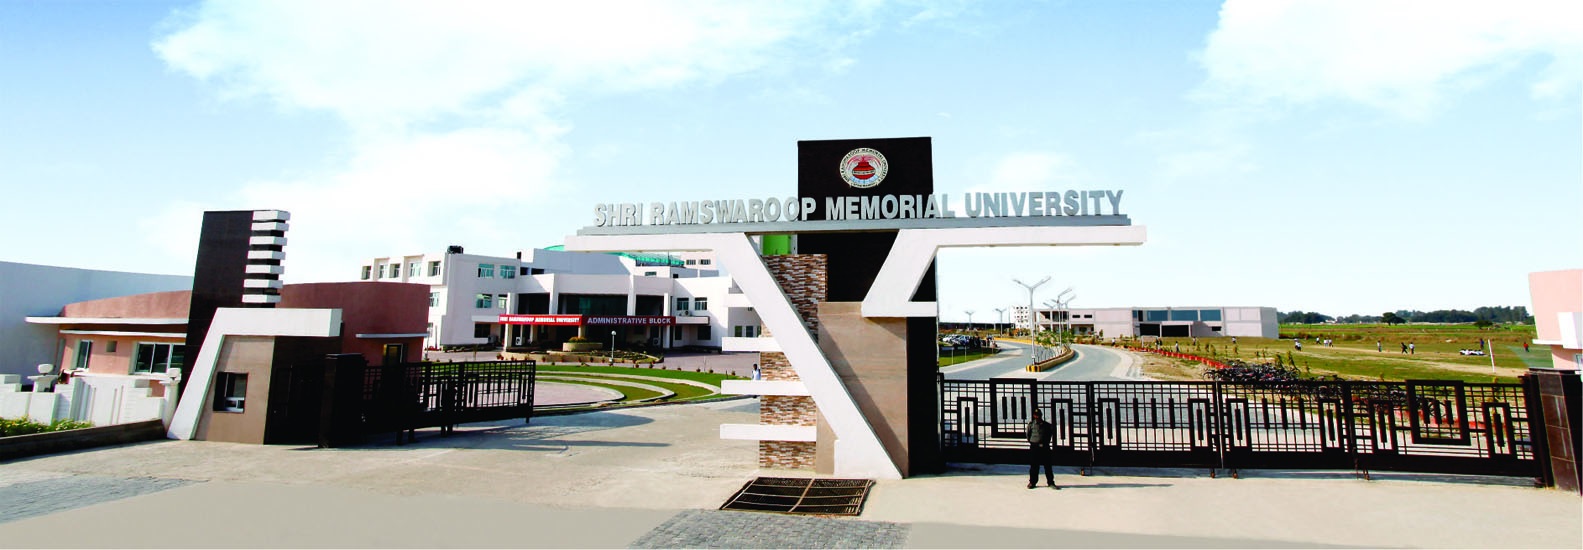 Shri Ramswaroop Memorial University